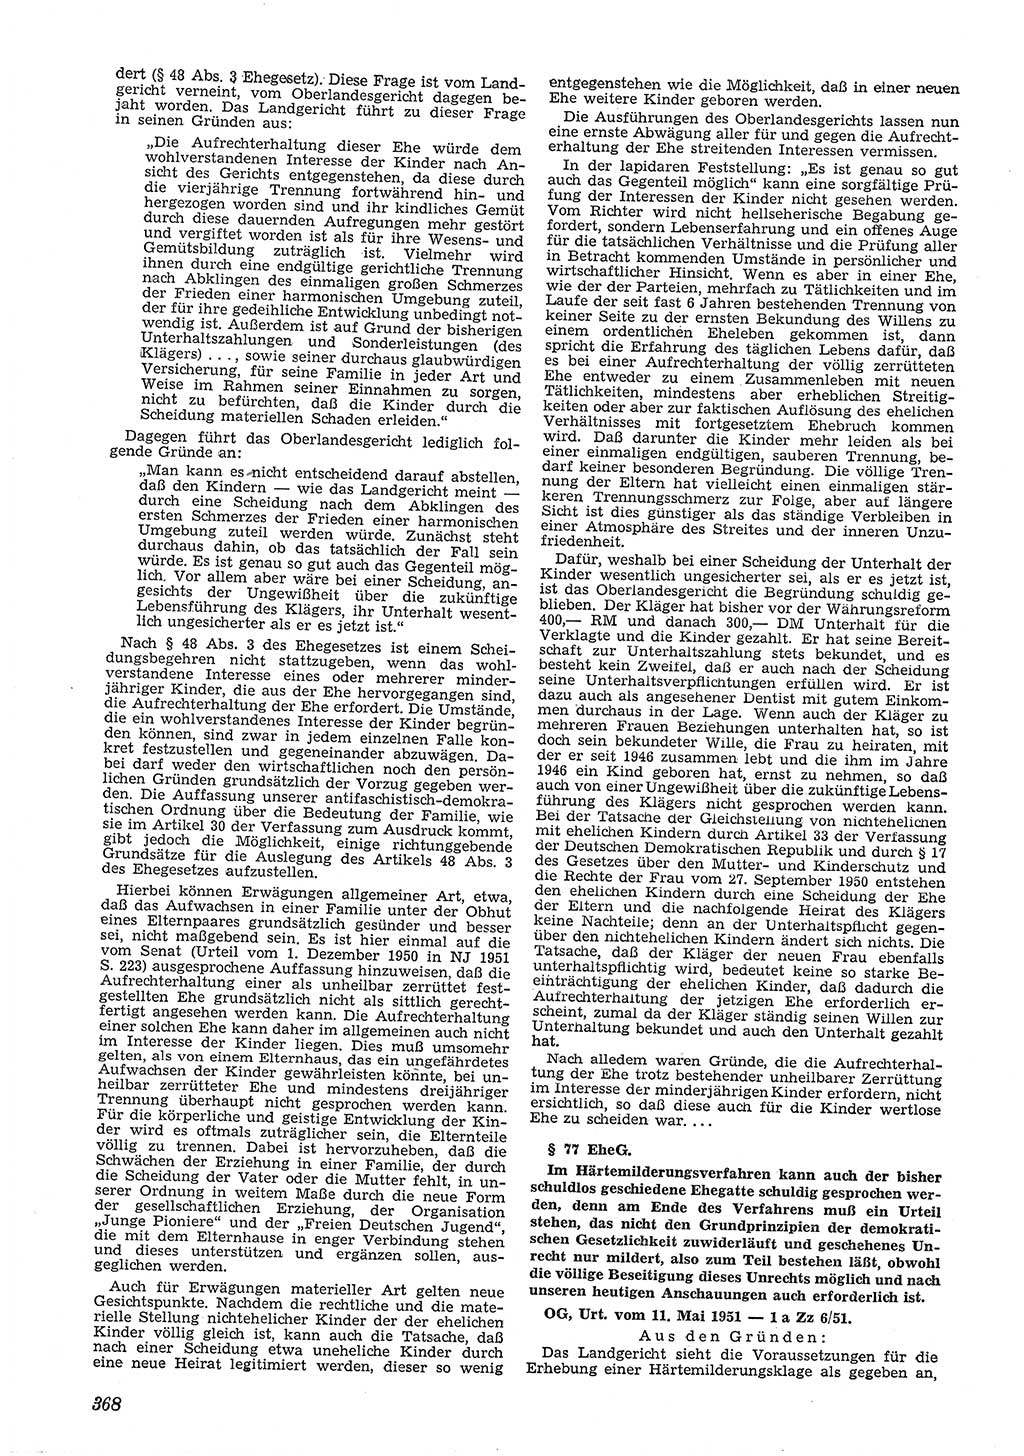 Neue Justiz (NJ), Zeitschrift für Recht und Rechtswissenschaft [Deutsche Demokratische Republik (DDR)], 5. Jahrgang 1951, Seite 368 (NJ DDR 1951, S. 368)